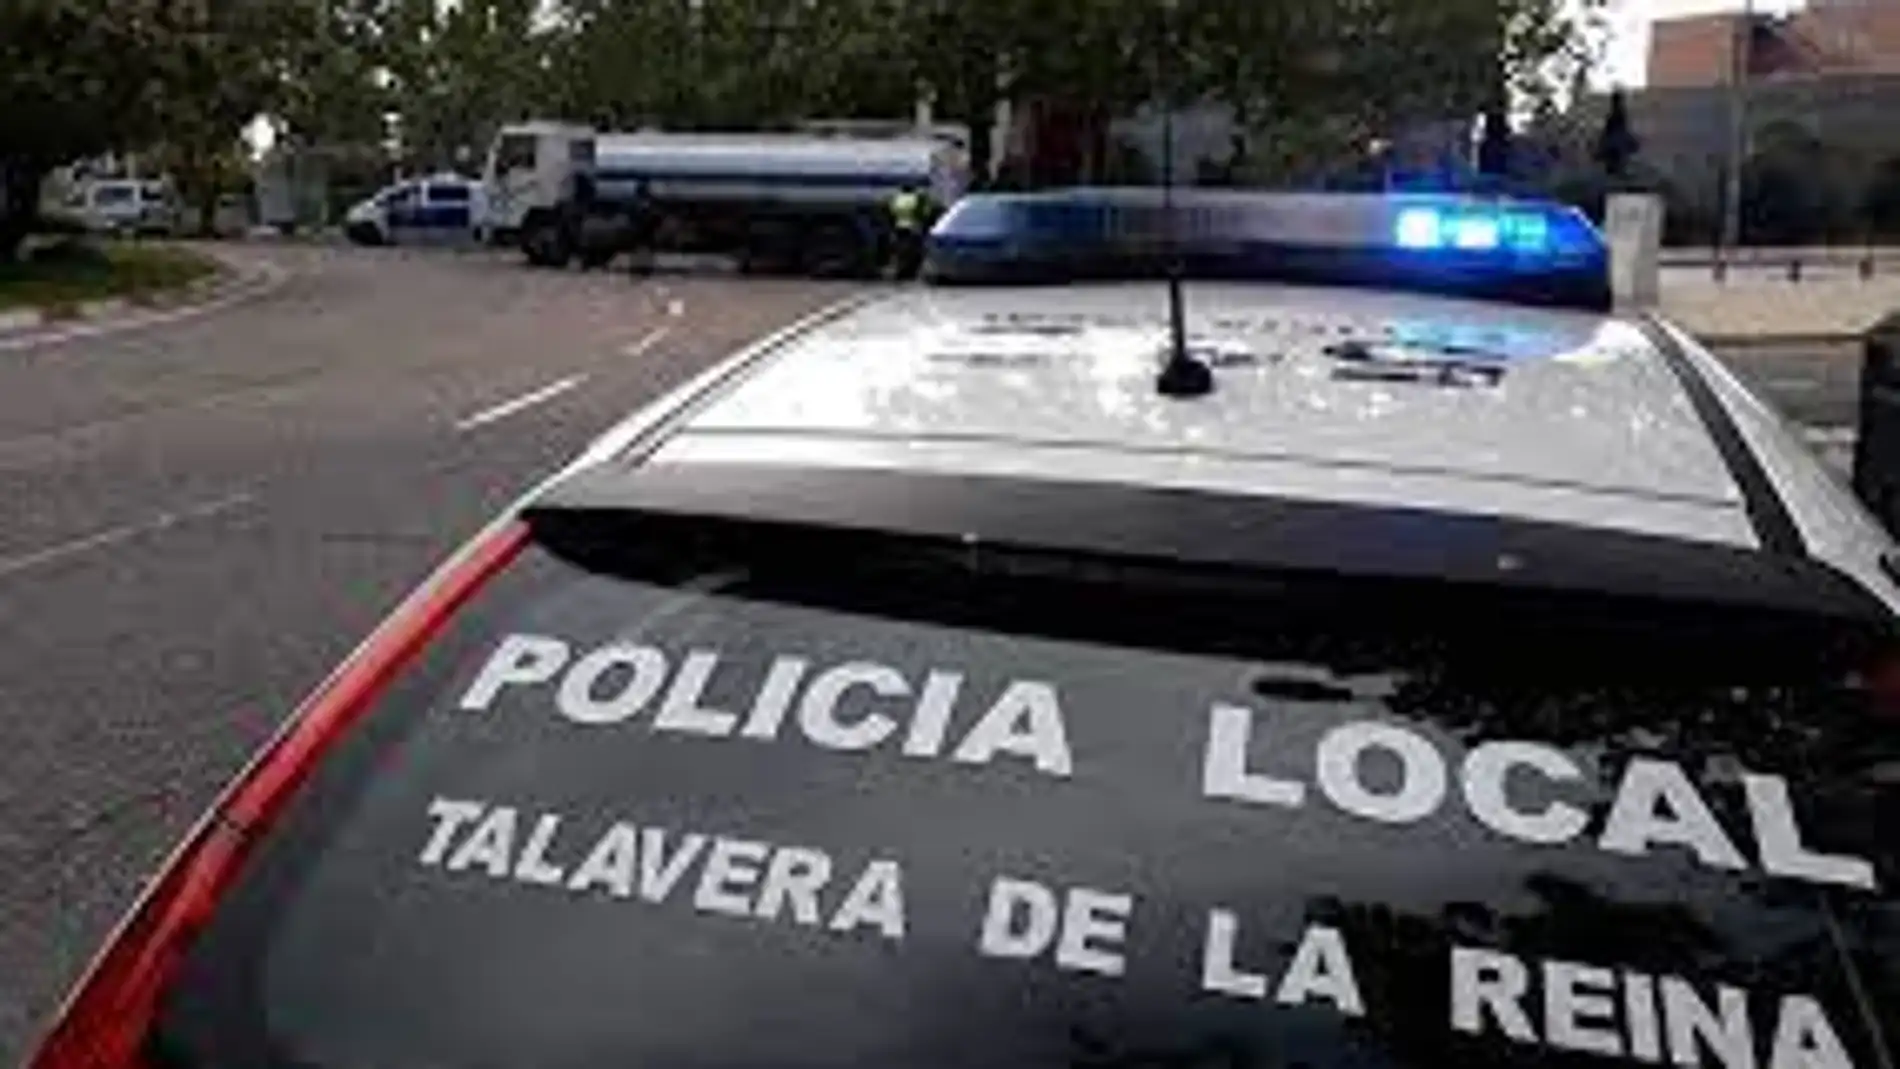 Registradas 65 denuncias por incumplimiento de medidas COVID en Talavera